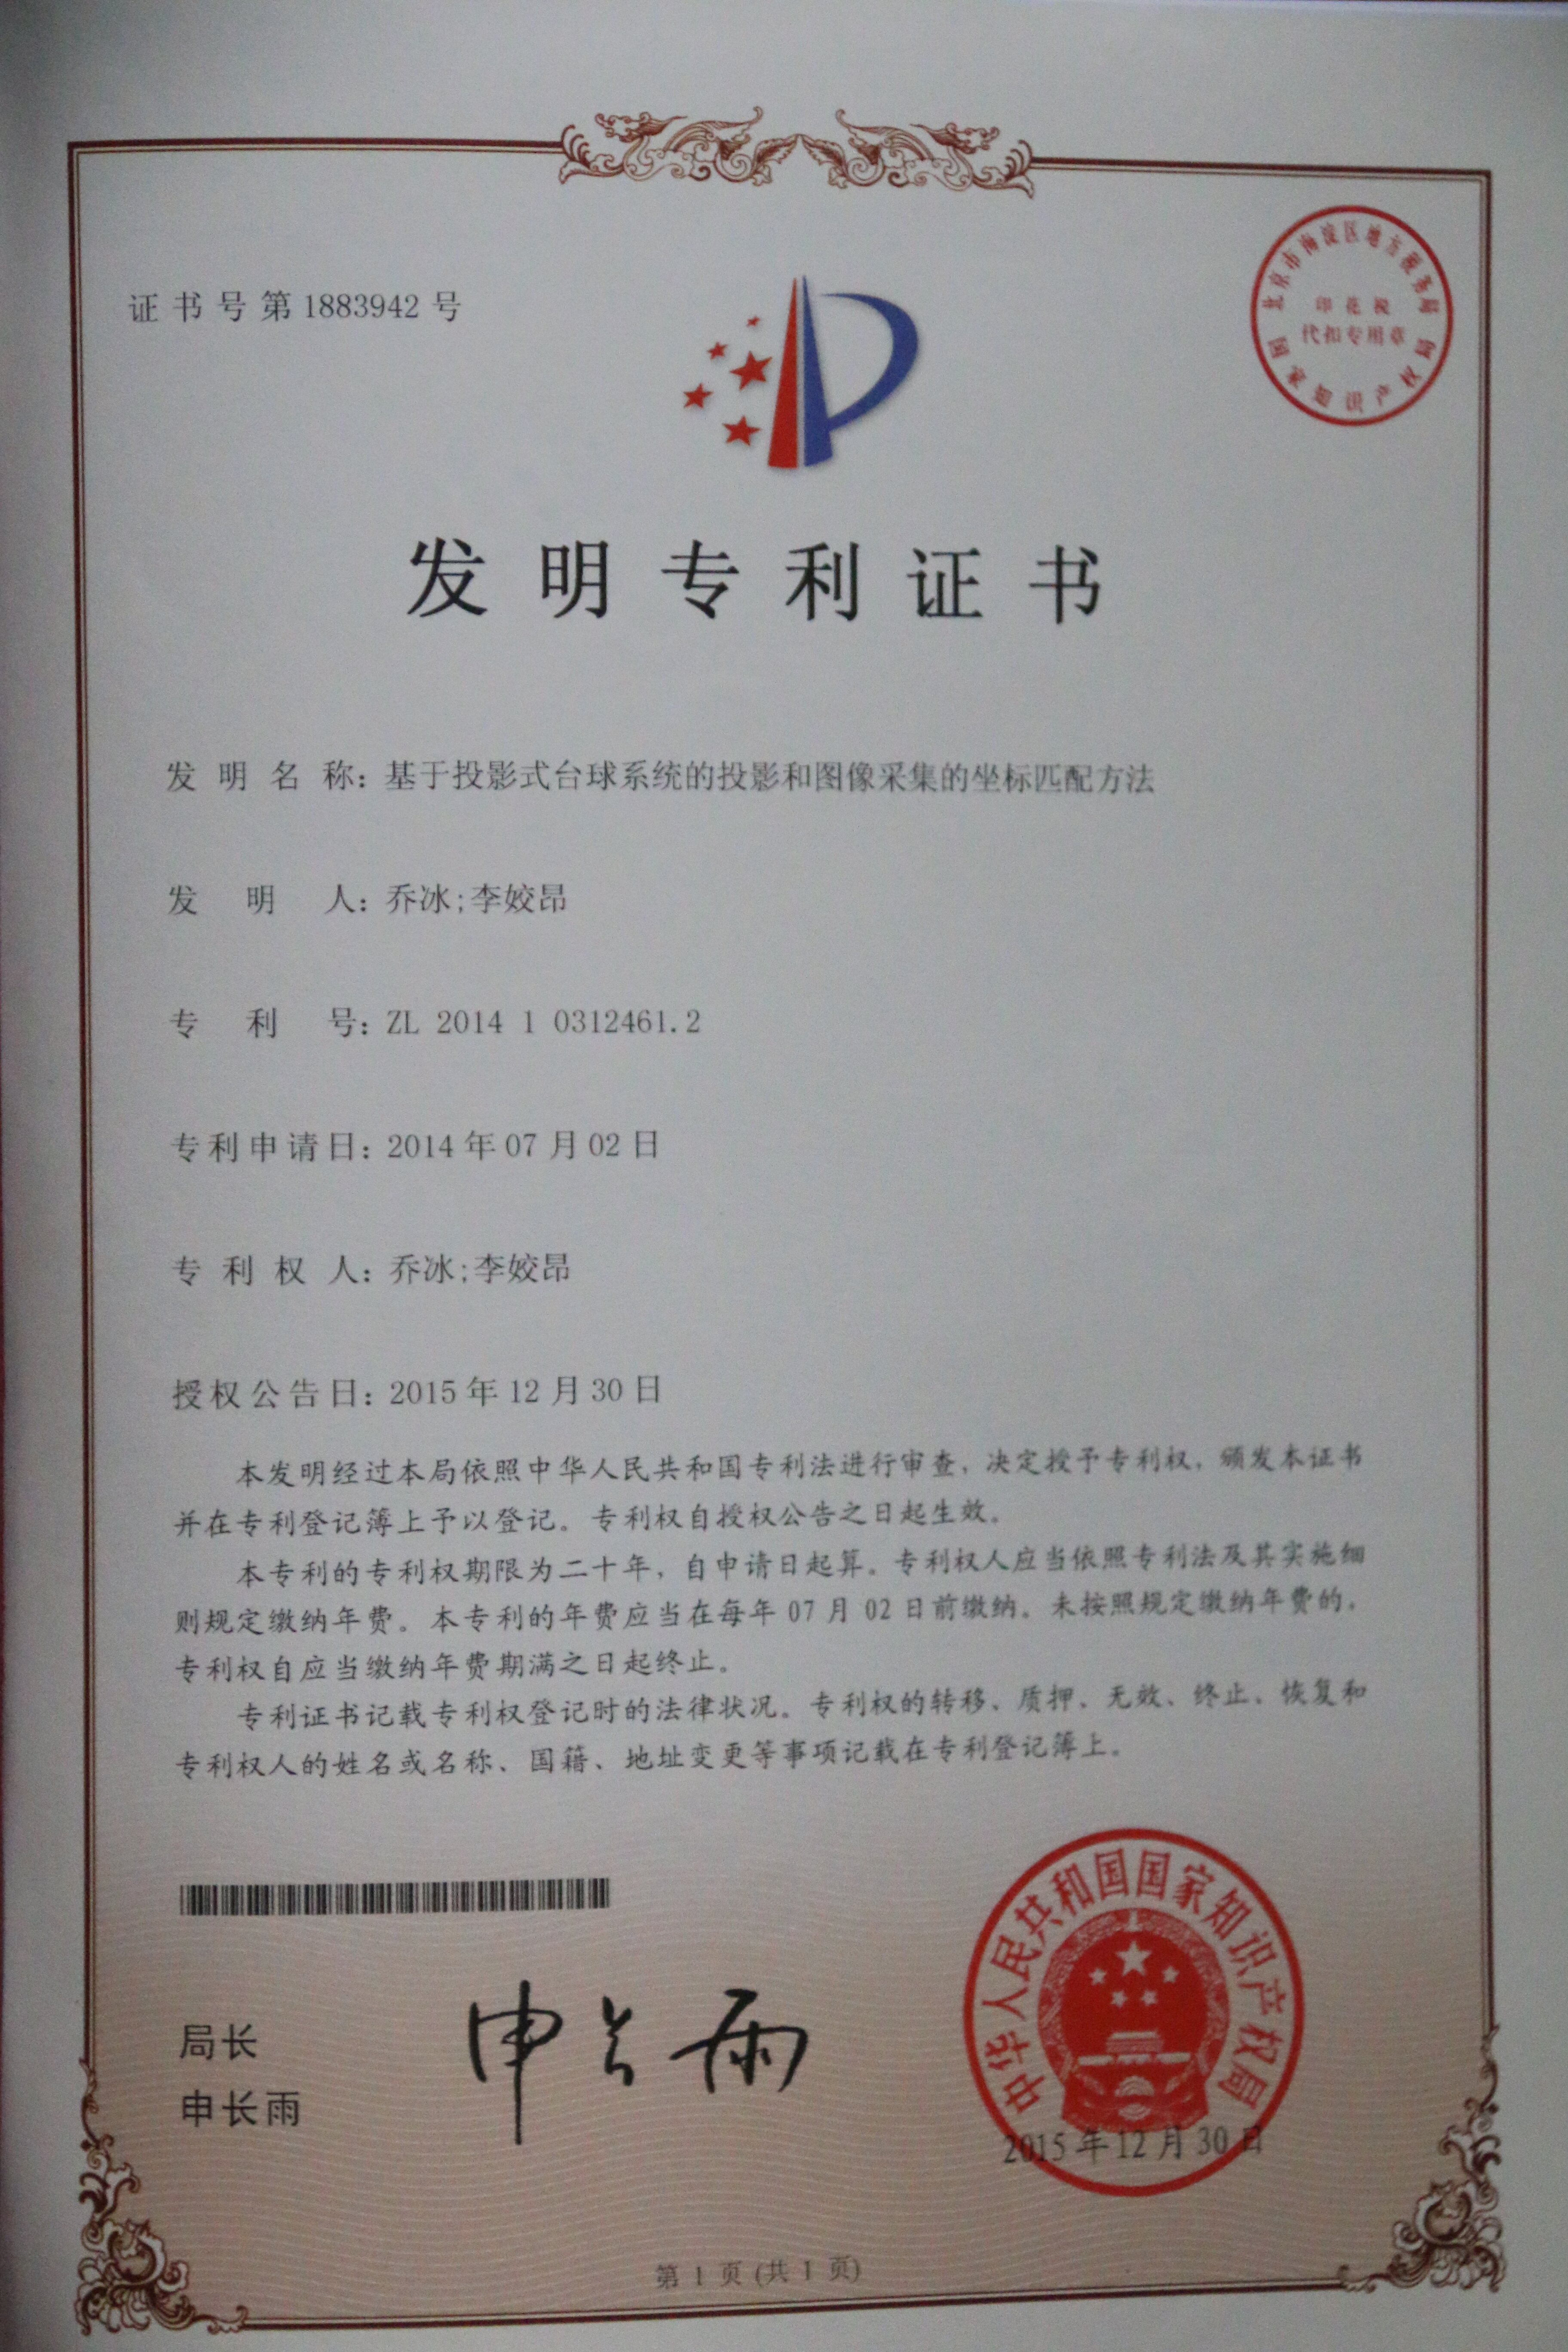 Certificado de patente Ipool